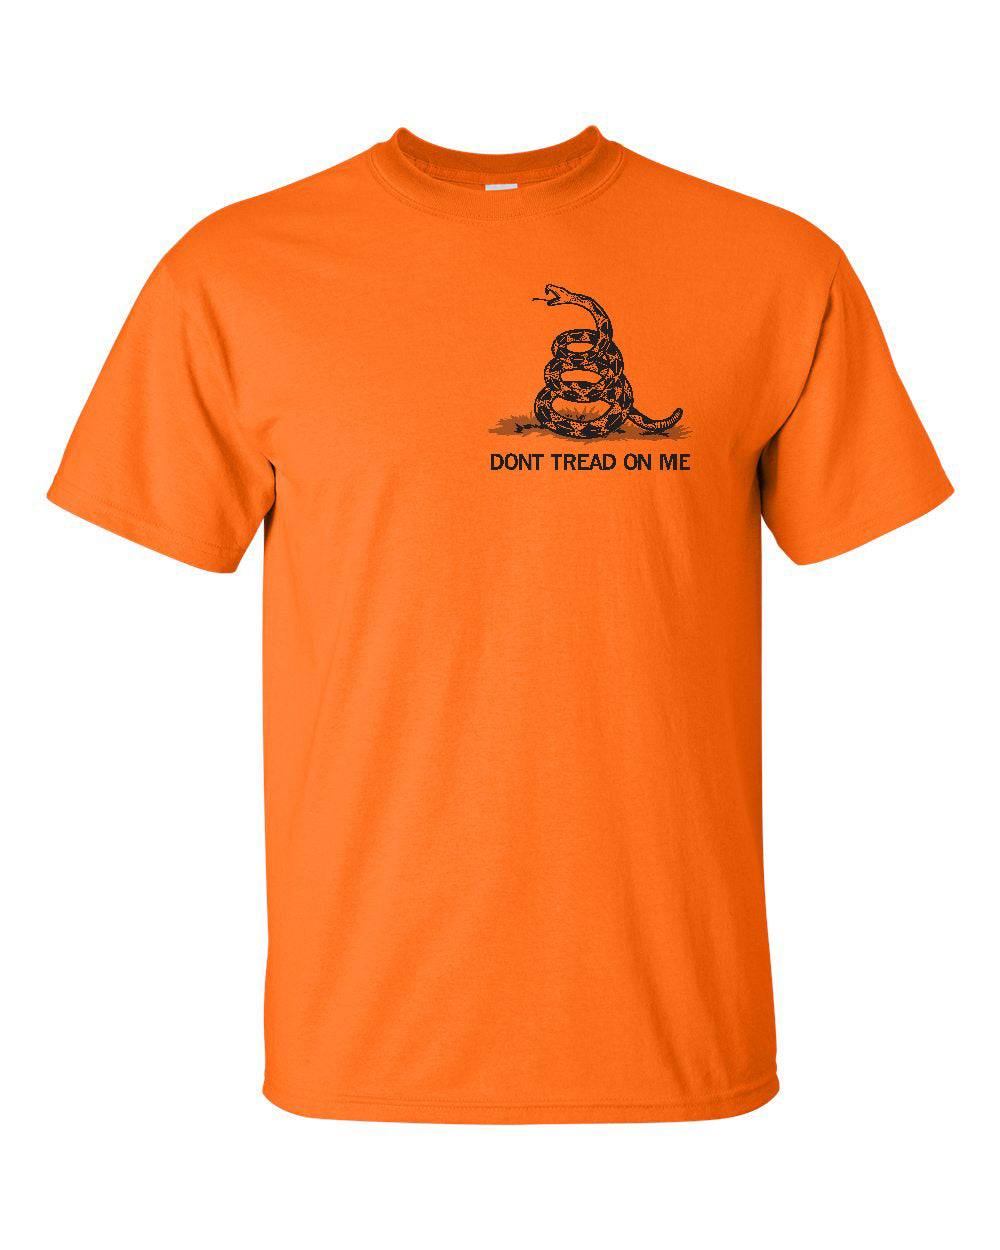 Classic Gadsden - Worksite Orange T-Shirt